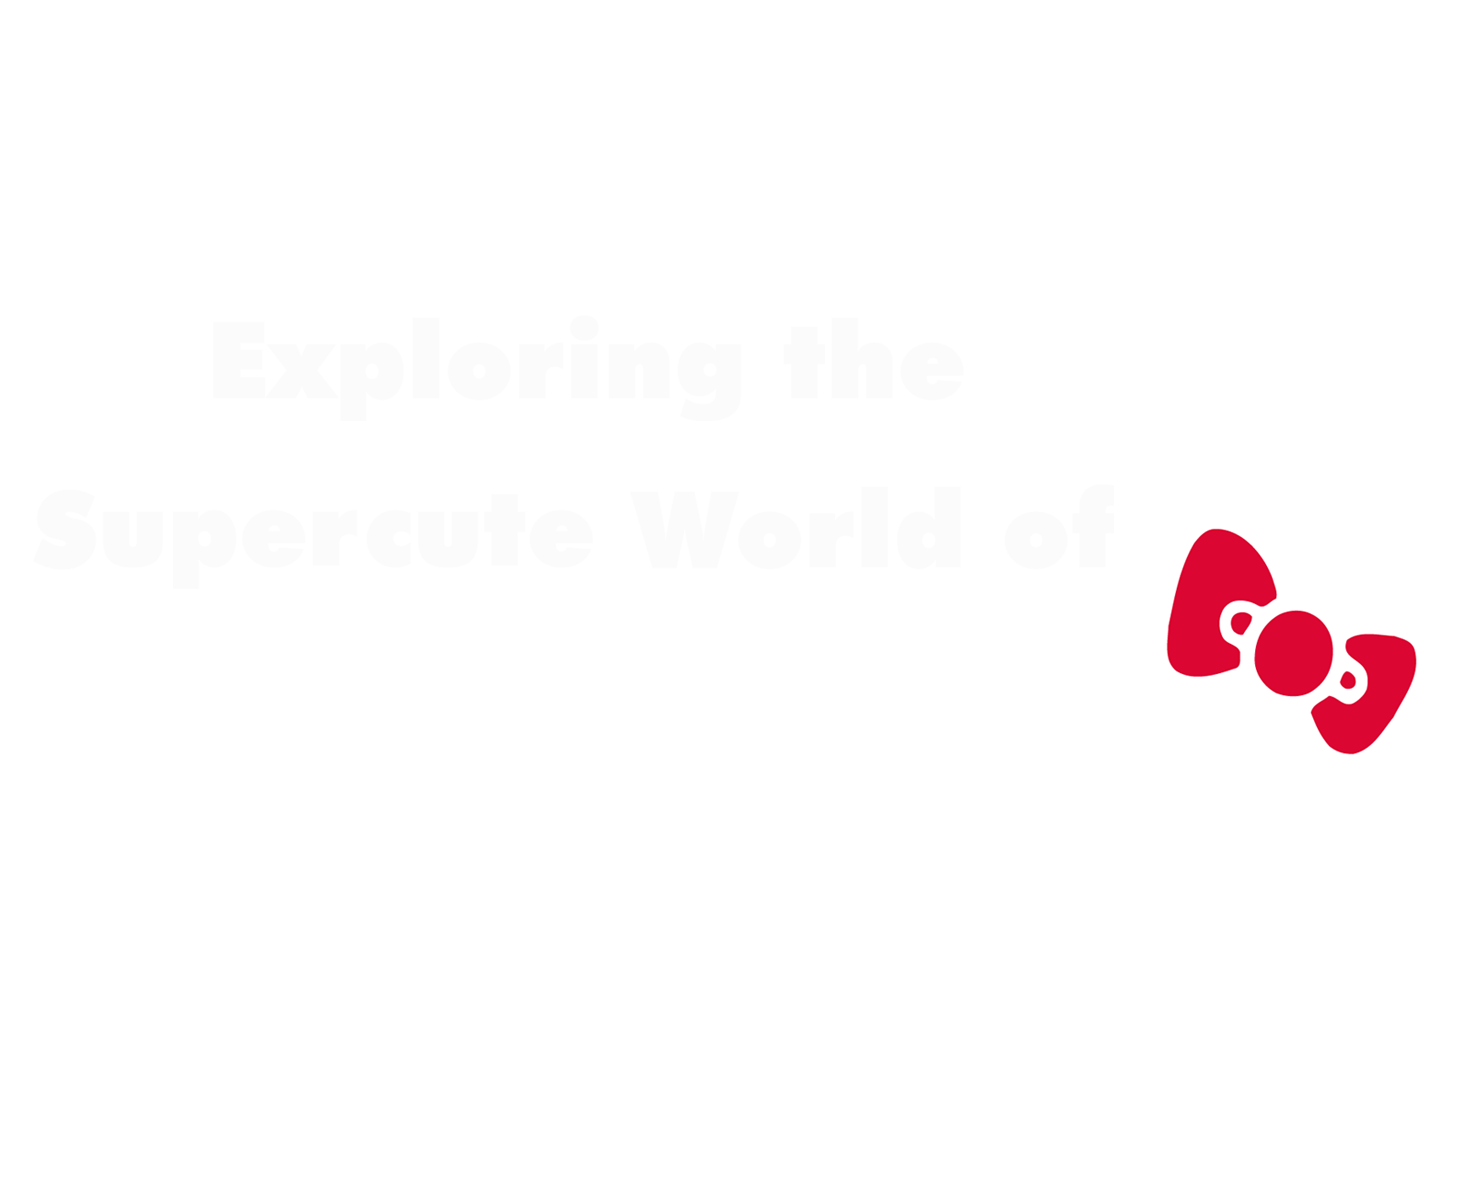 Say Hi To Hello Kitty's Los Angeles